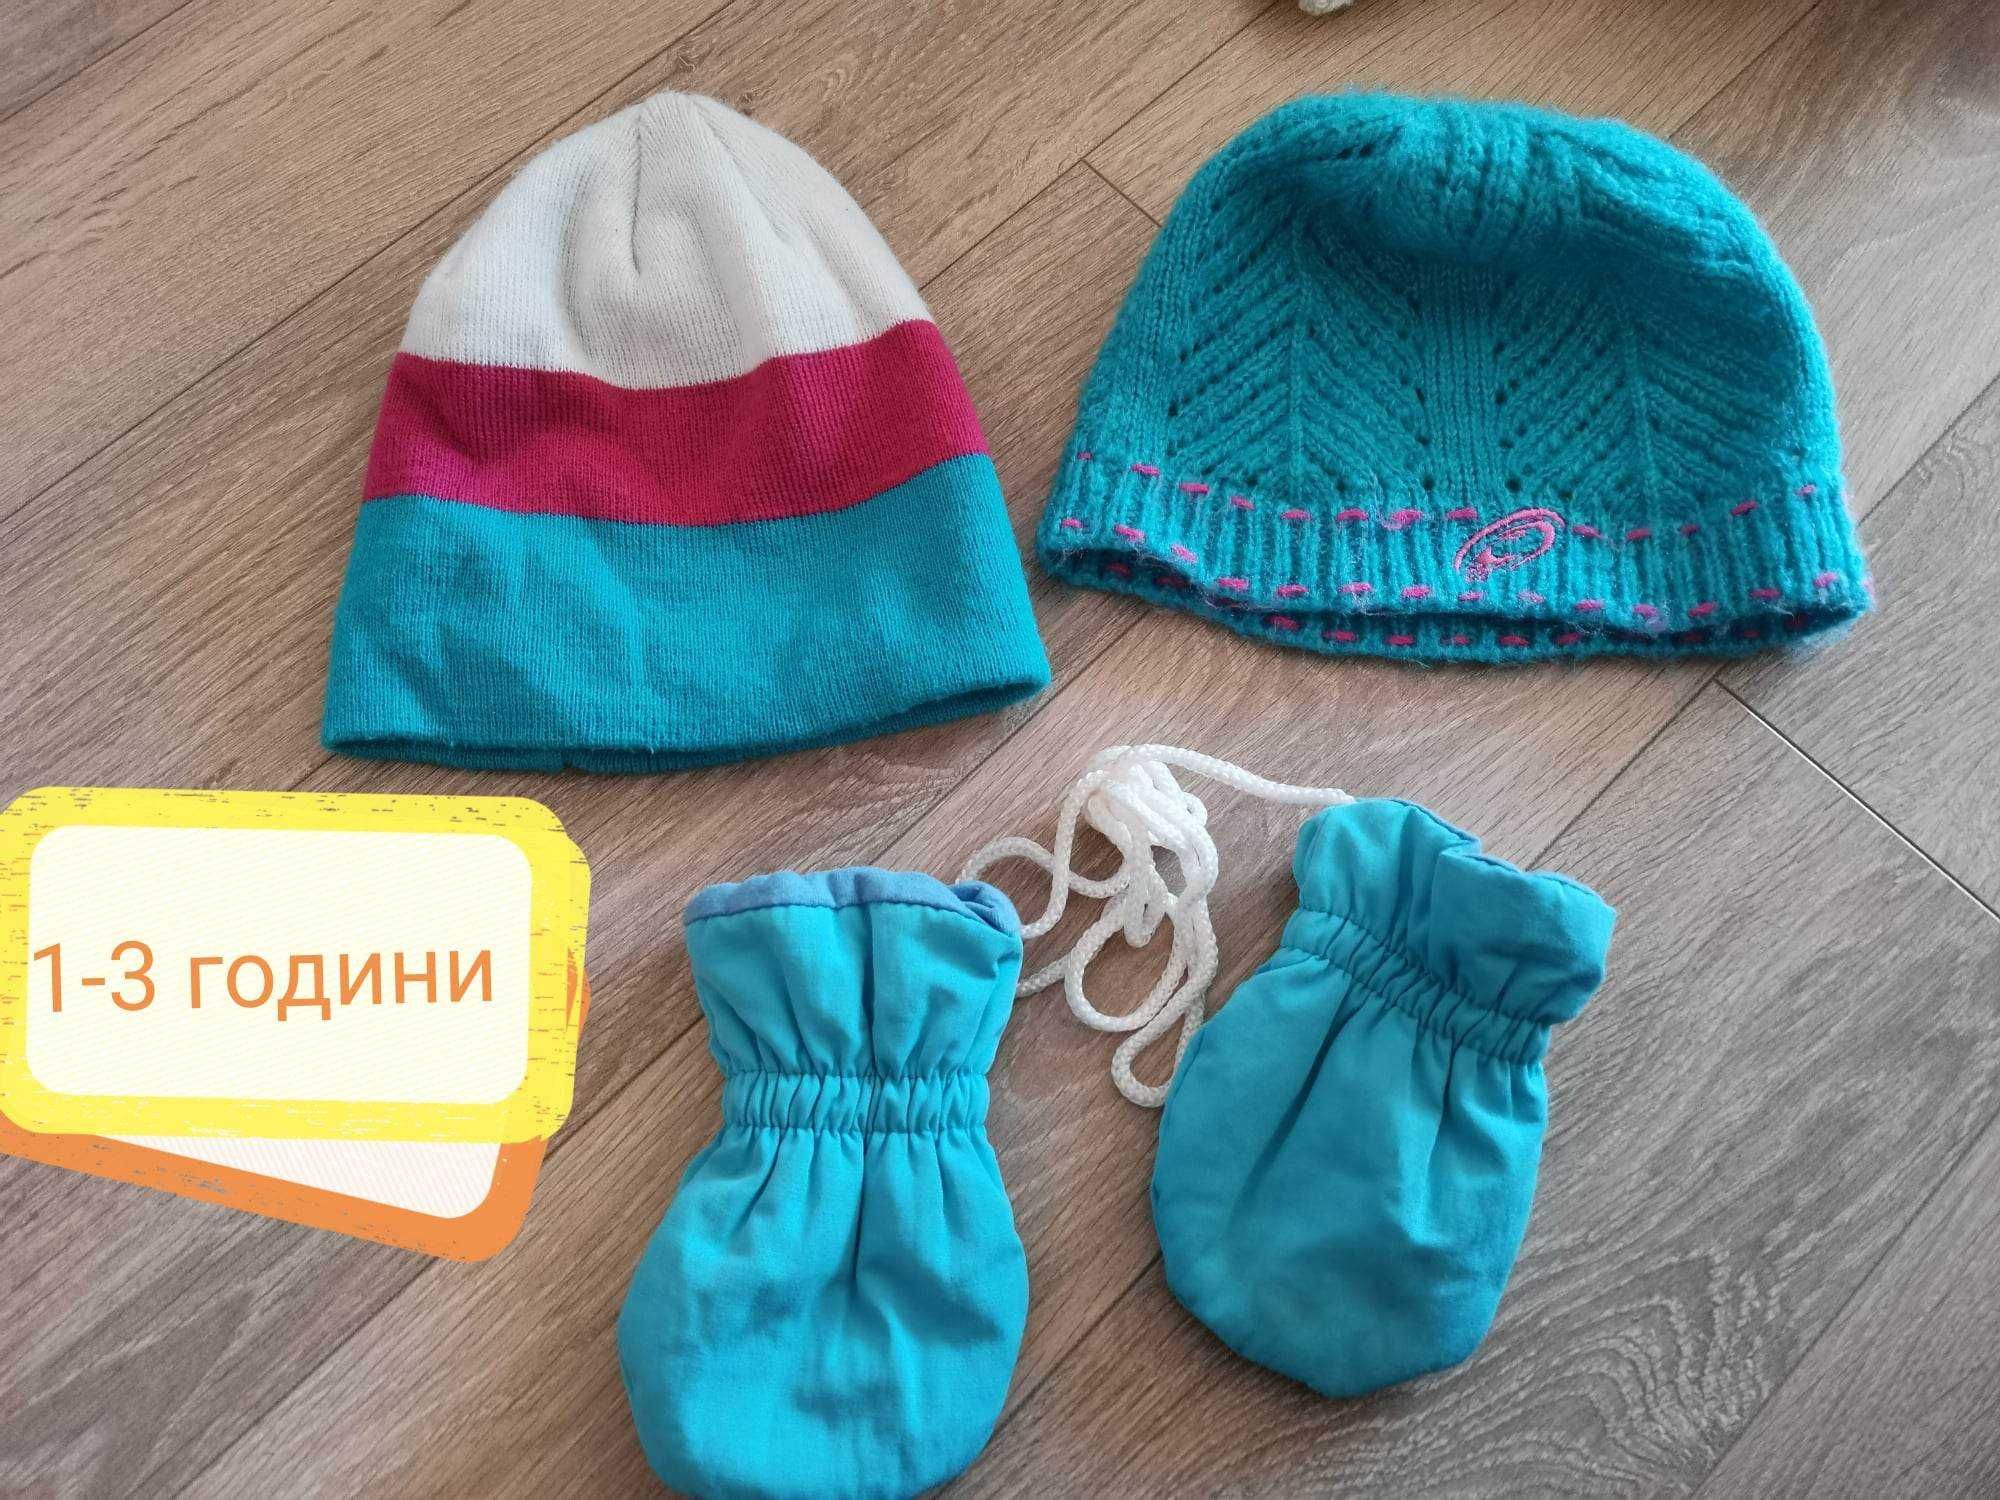 Зимни и летни шапки, шалове, ръкавици